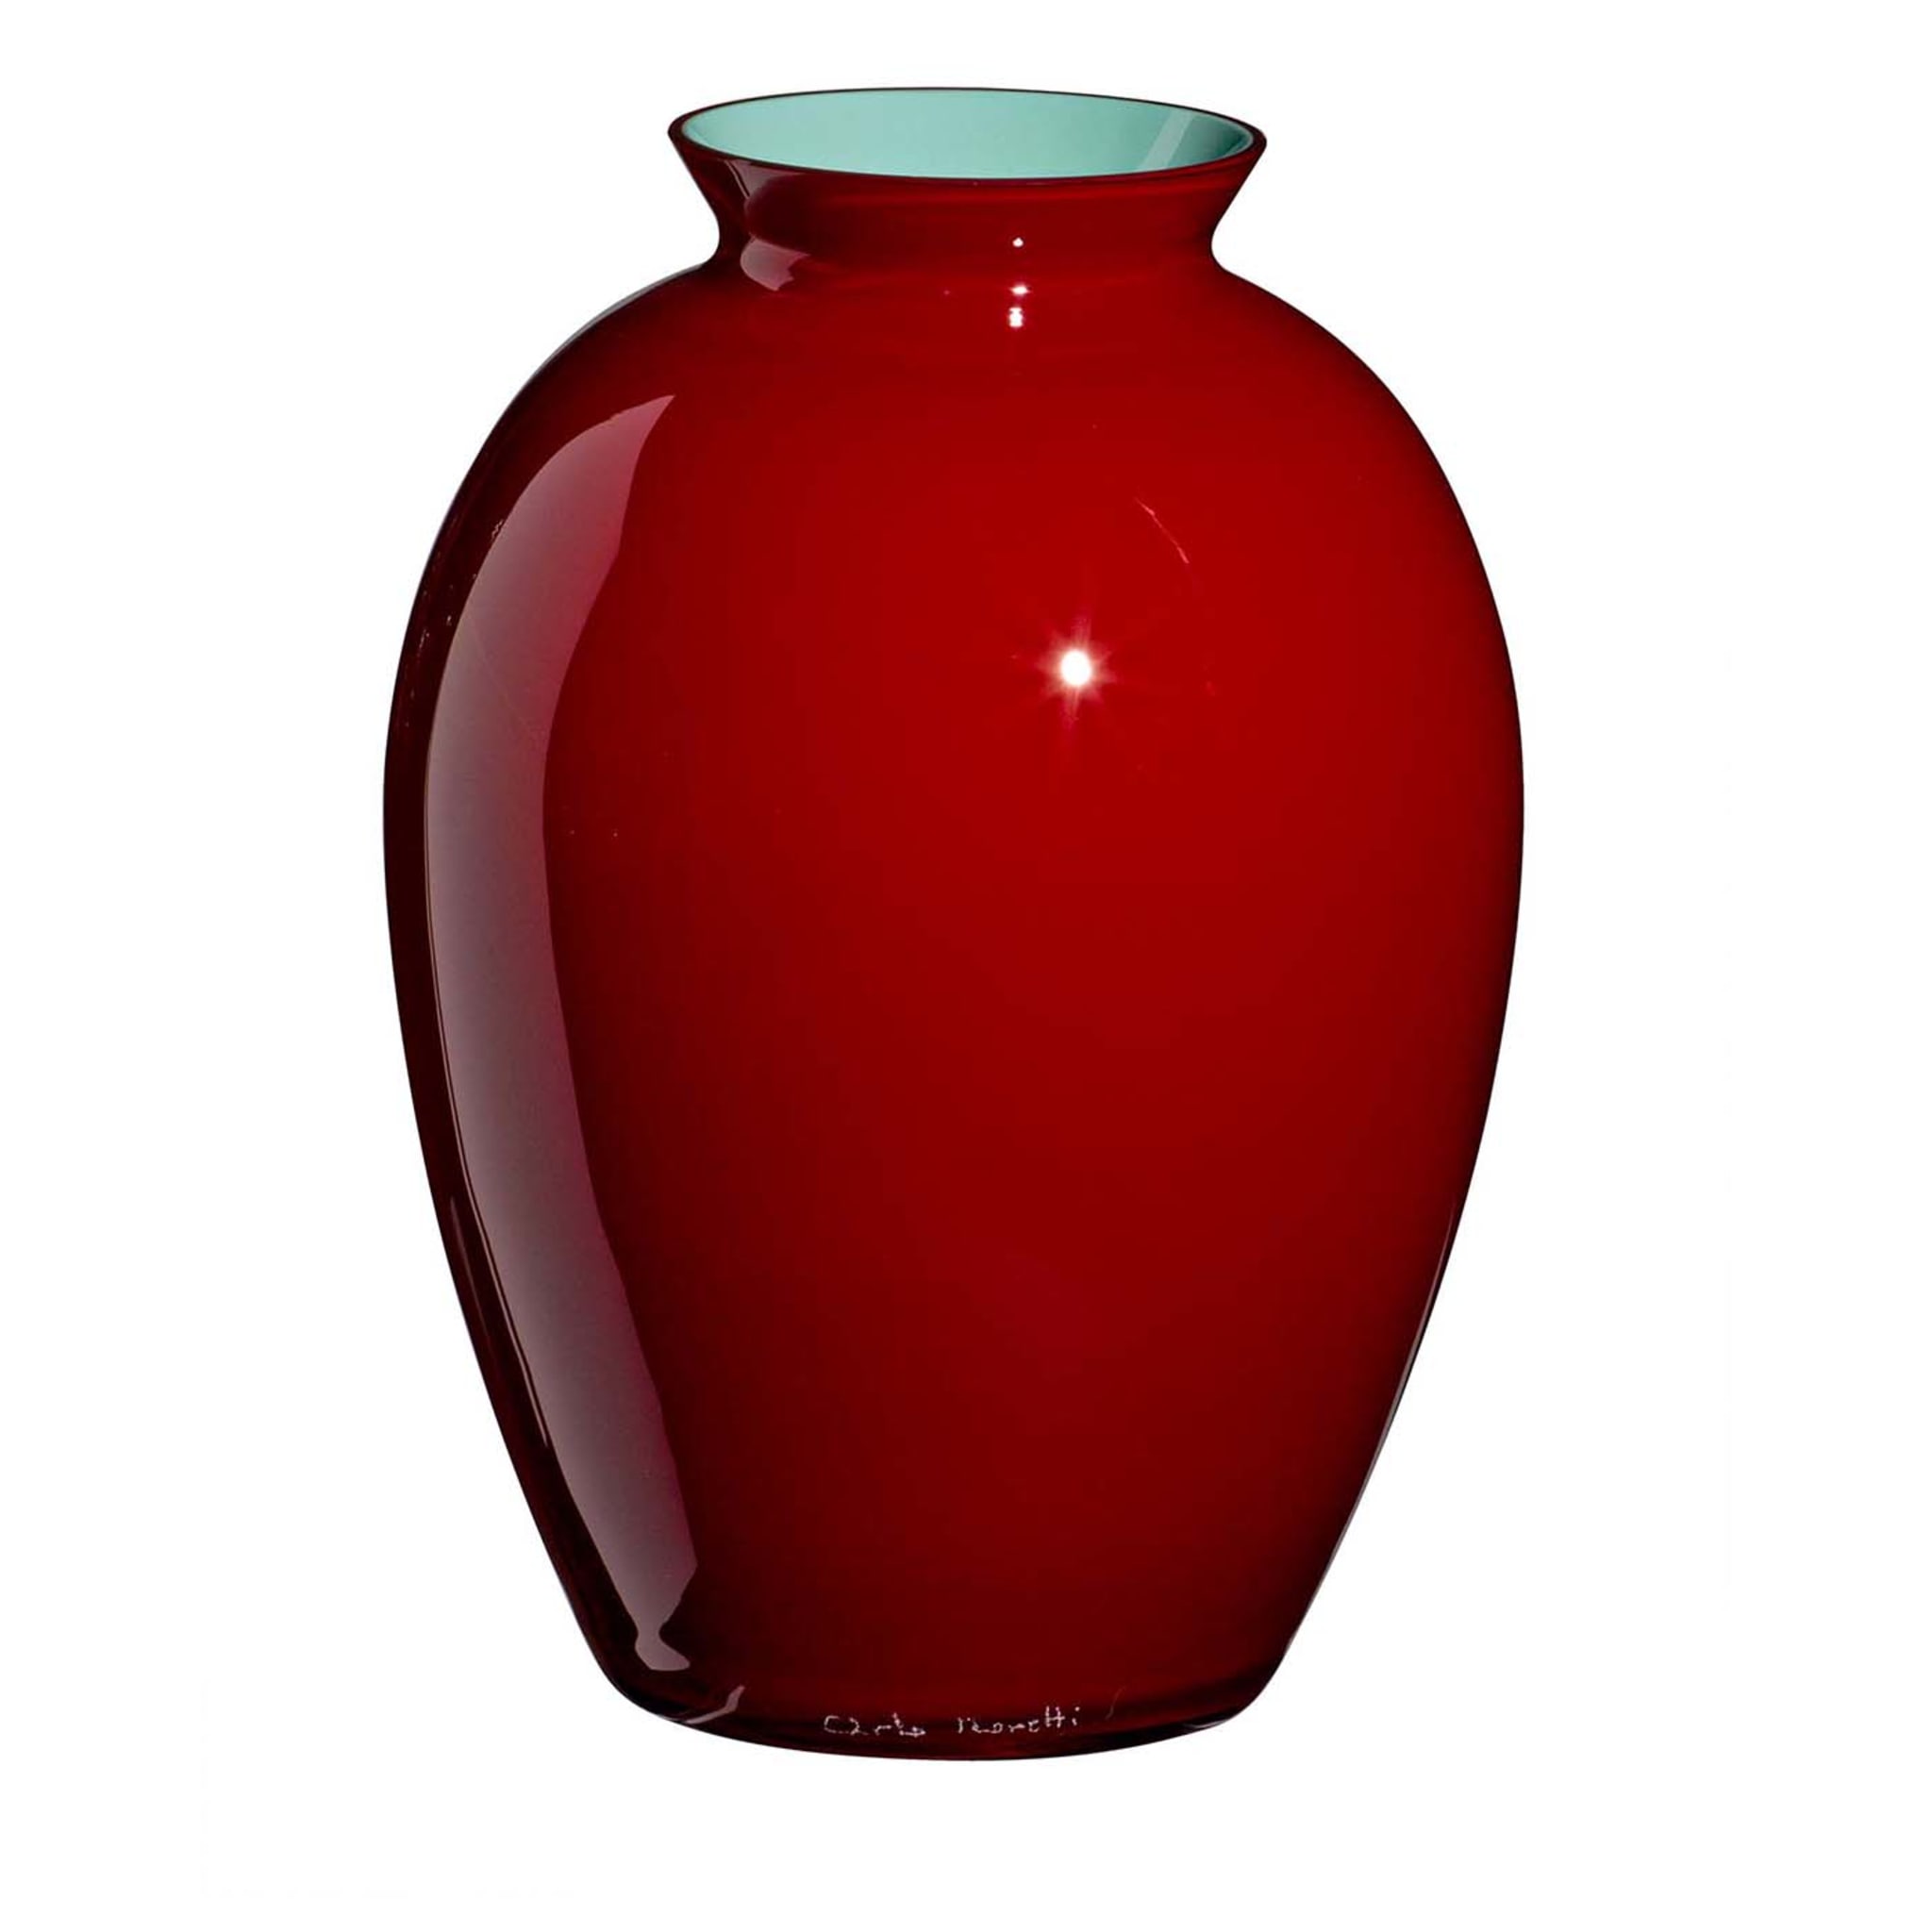 Lopas Mittlere Vase in Rot und Türkis von Carlo Moretti - Hauptansicht